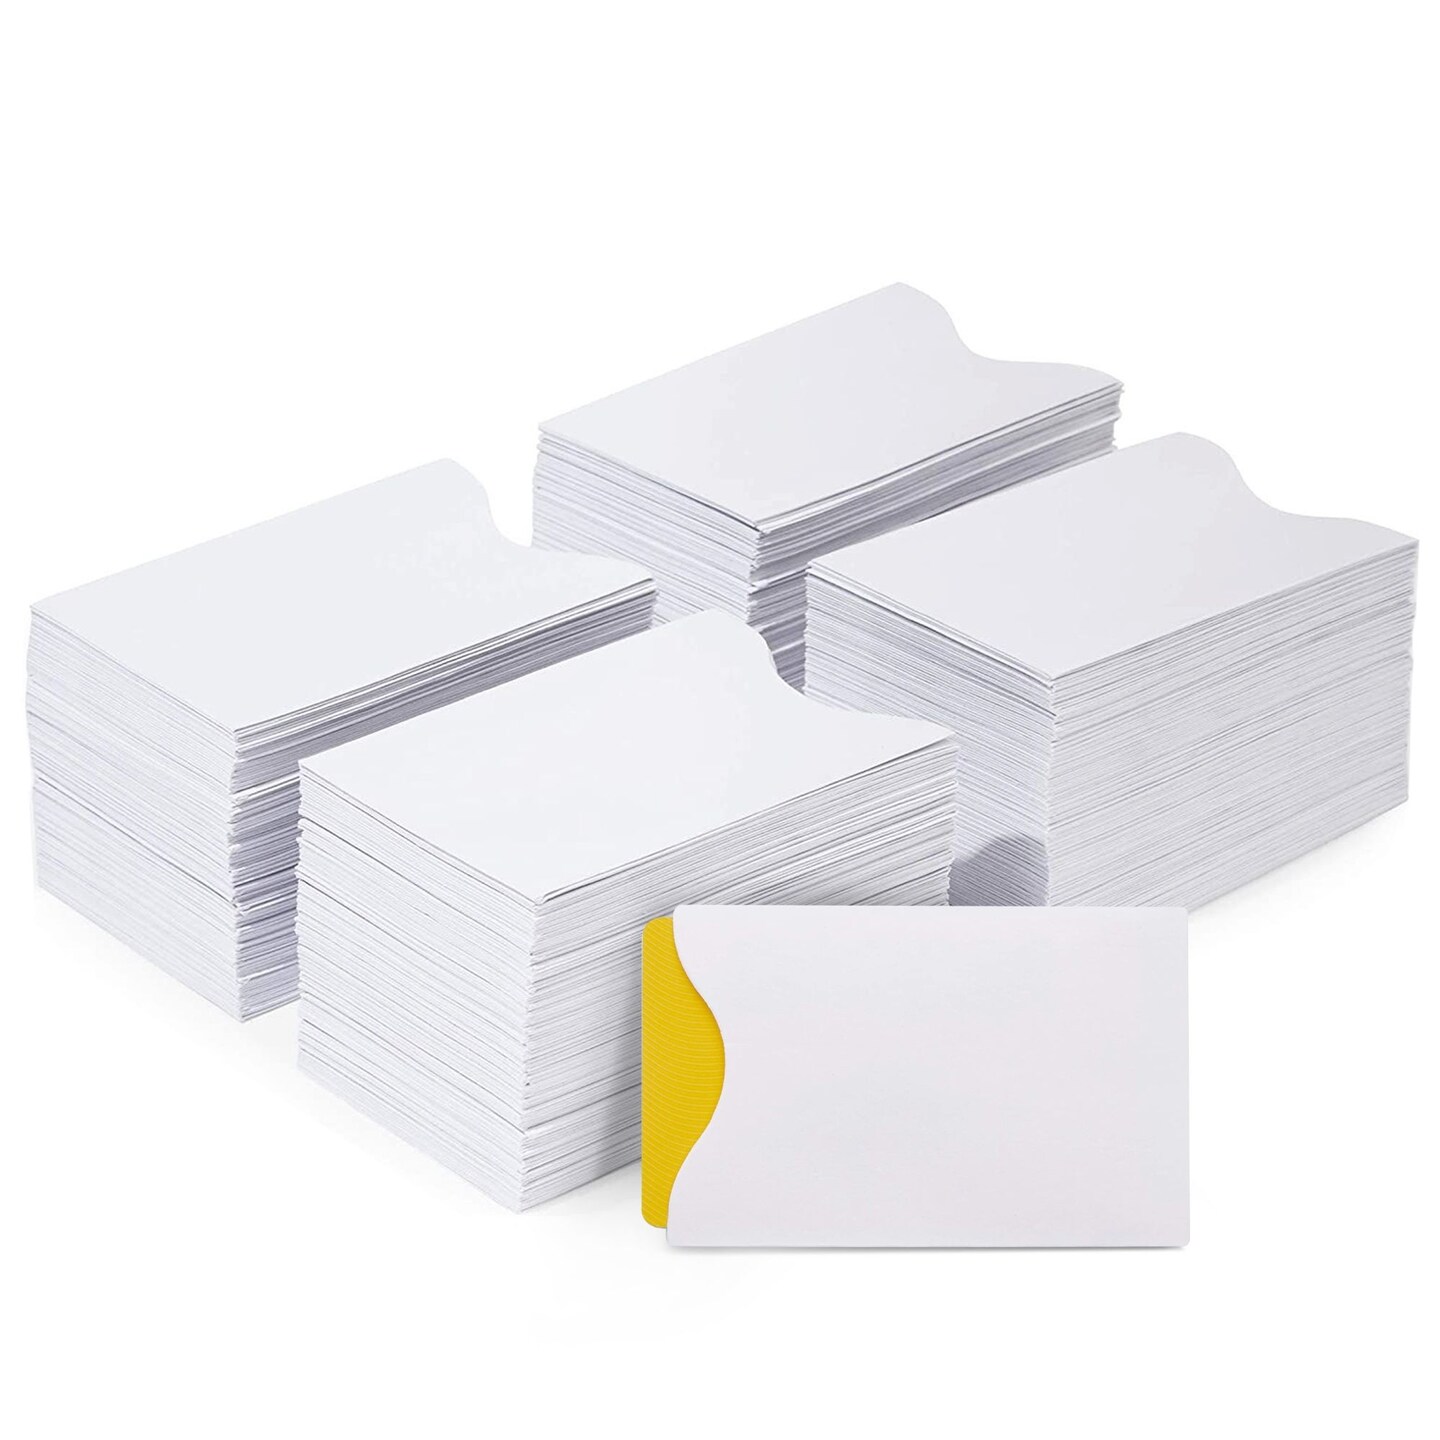 500 Pack Blank Keycard Envelope Sleeves, Card Protectors (White, 3.5 x 2.3 In)